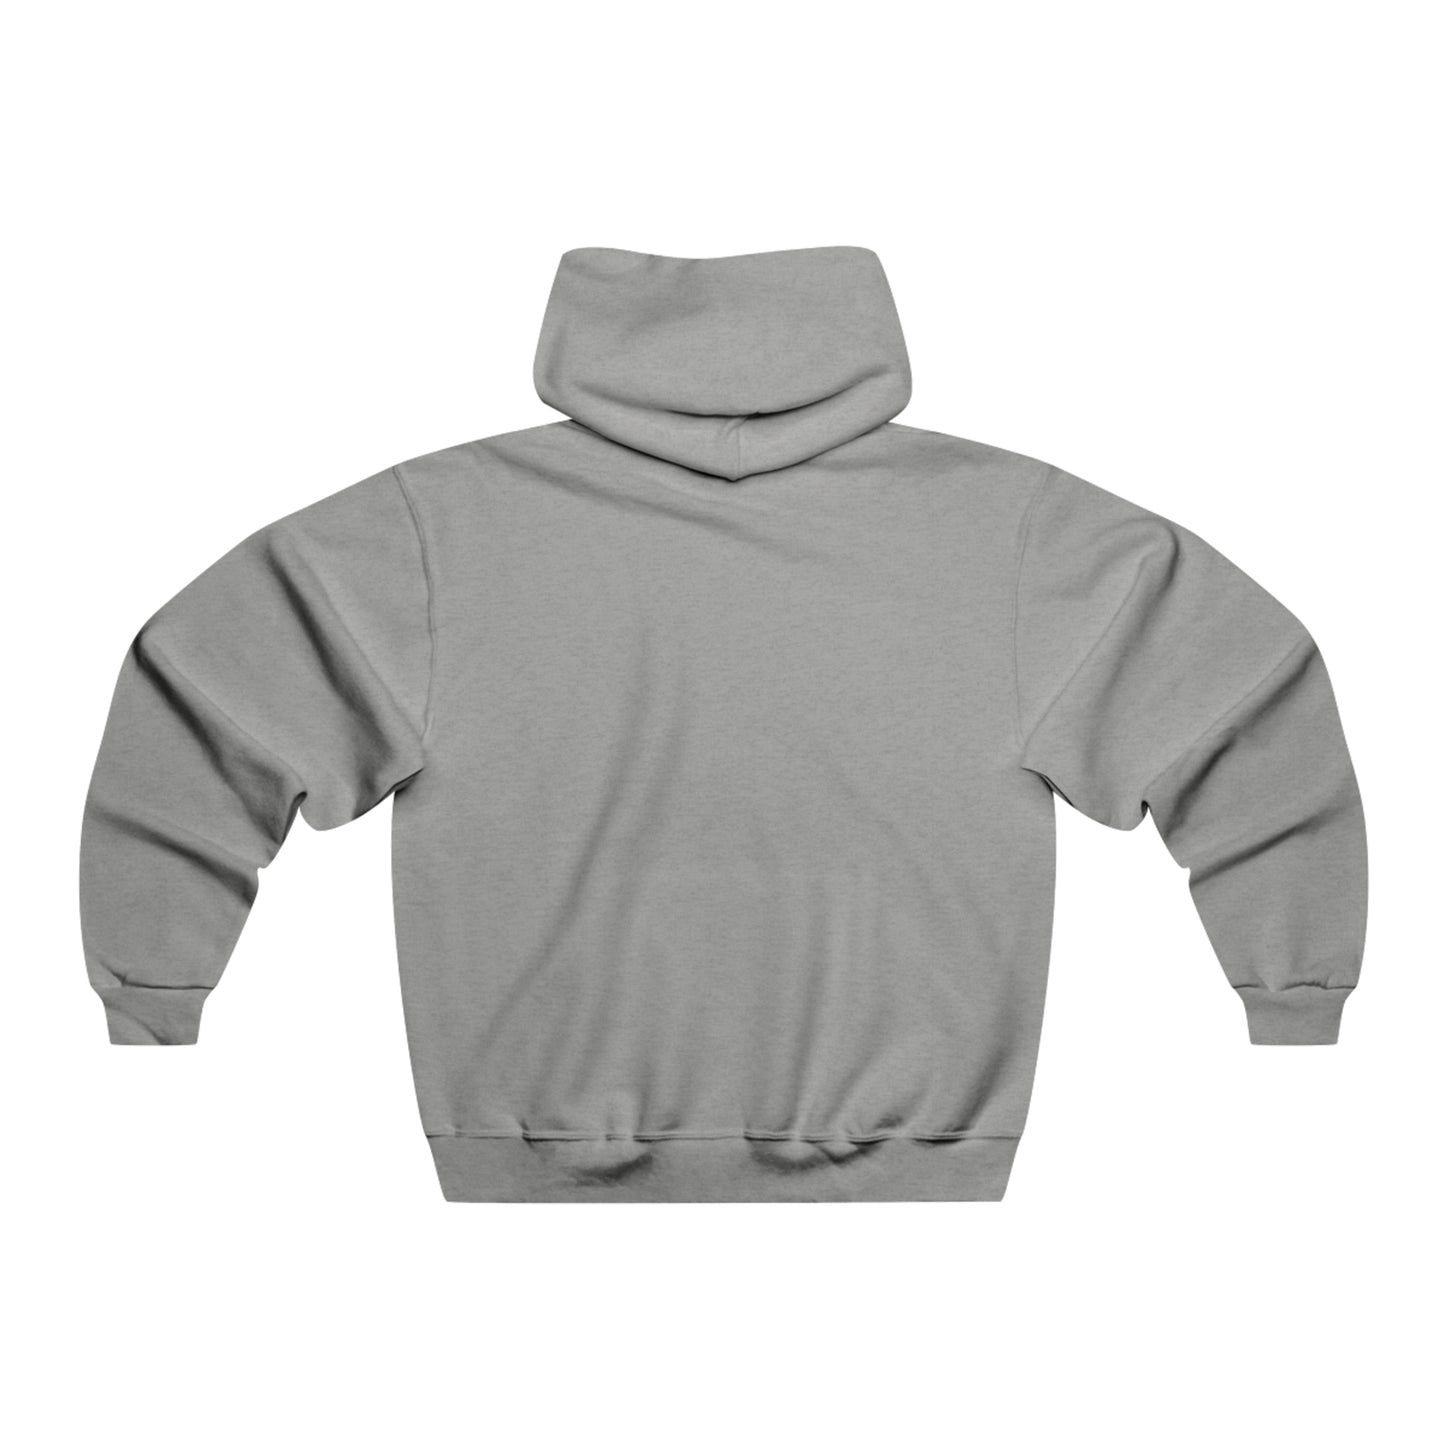 Mustang NUBLEND® Hooded Sweatshirt